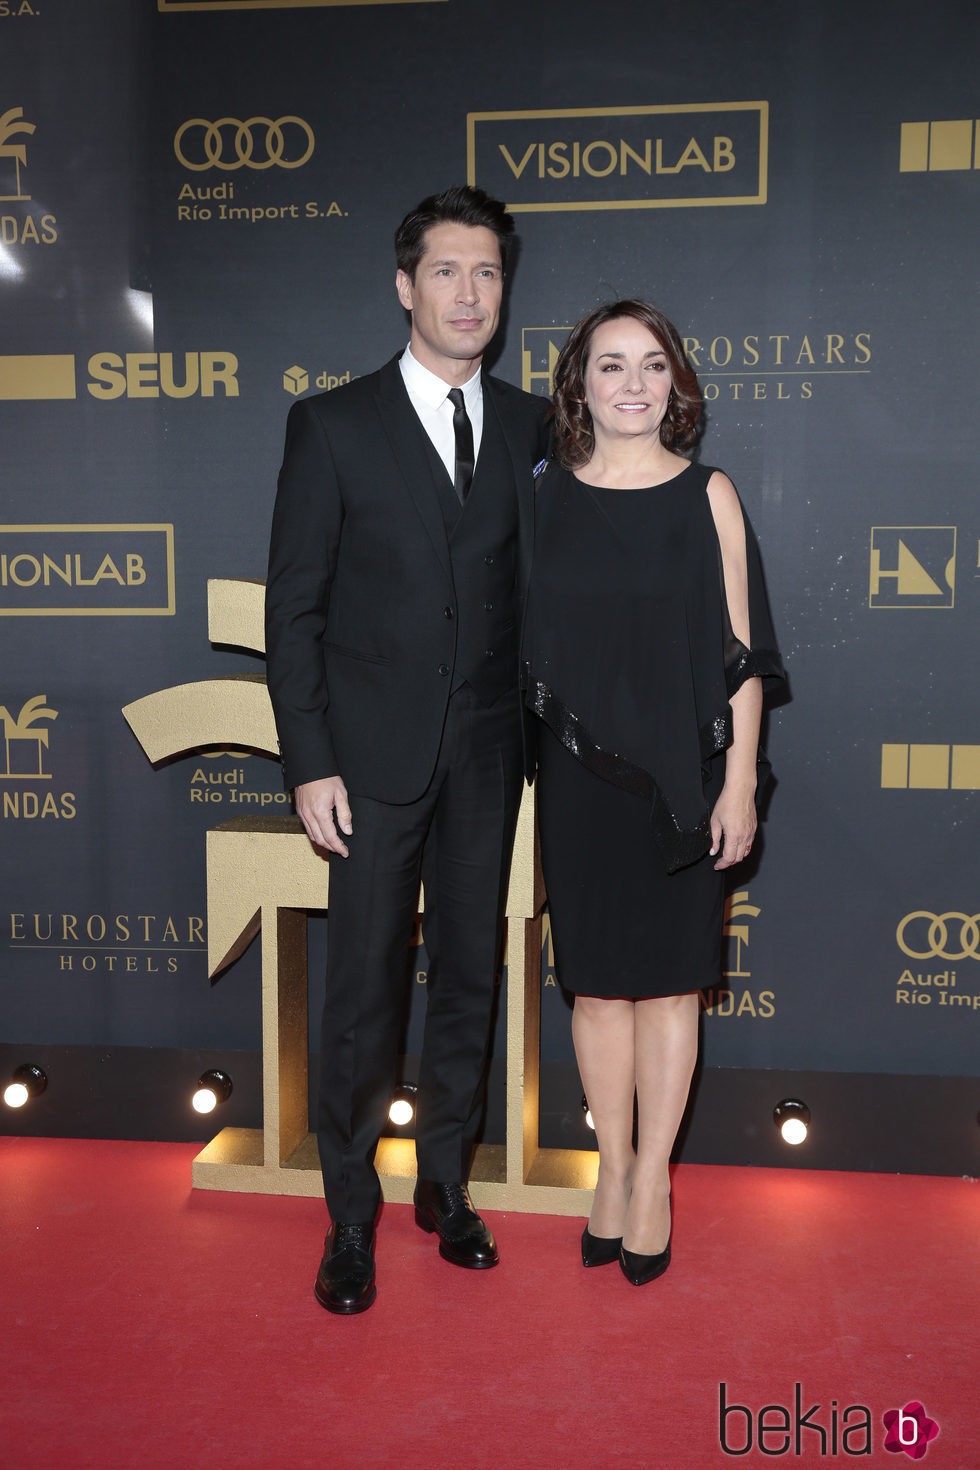 Jaime Cantizano y Pepa Bueno en los premios Ondas 2015